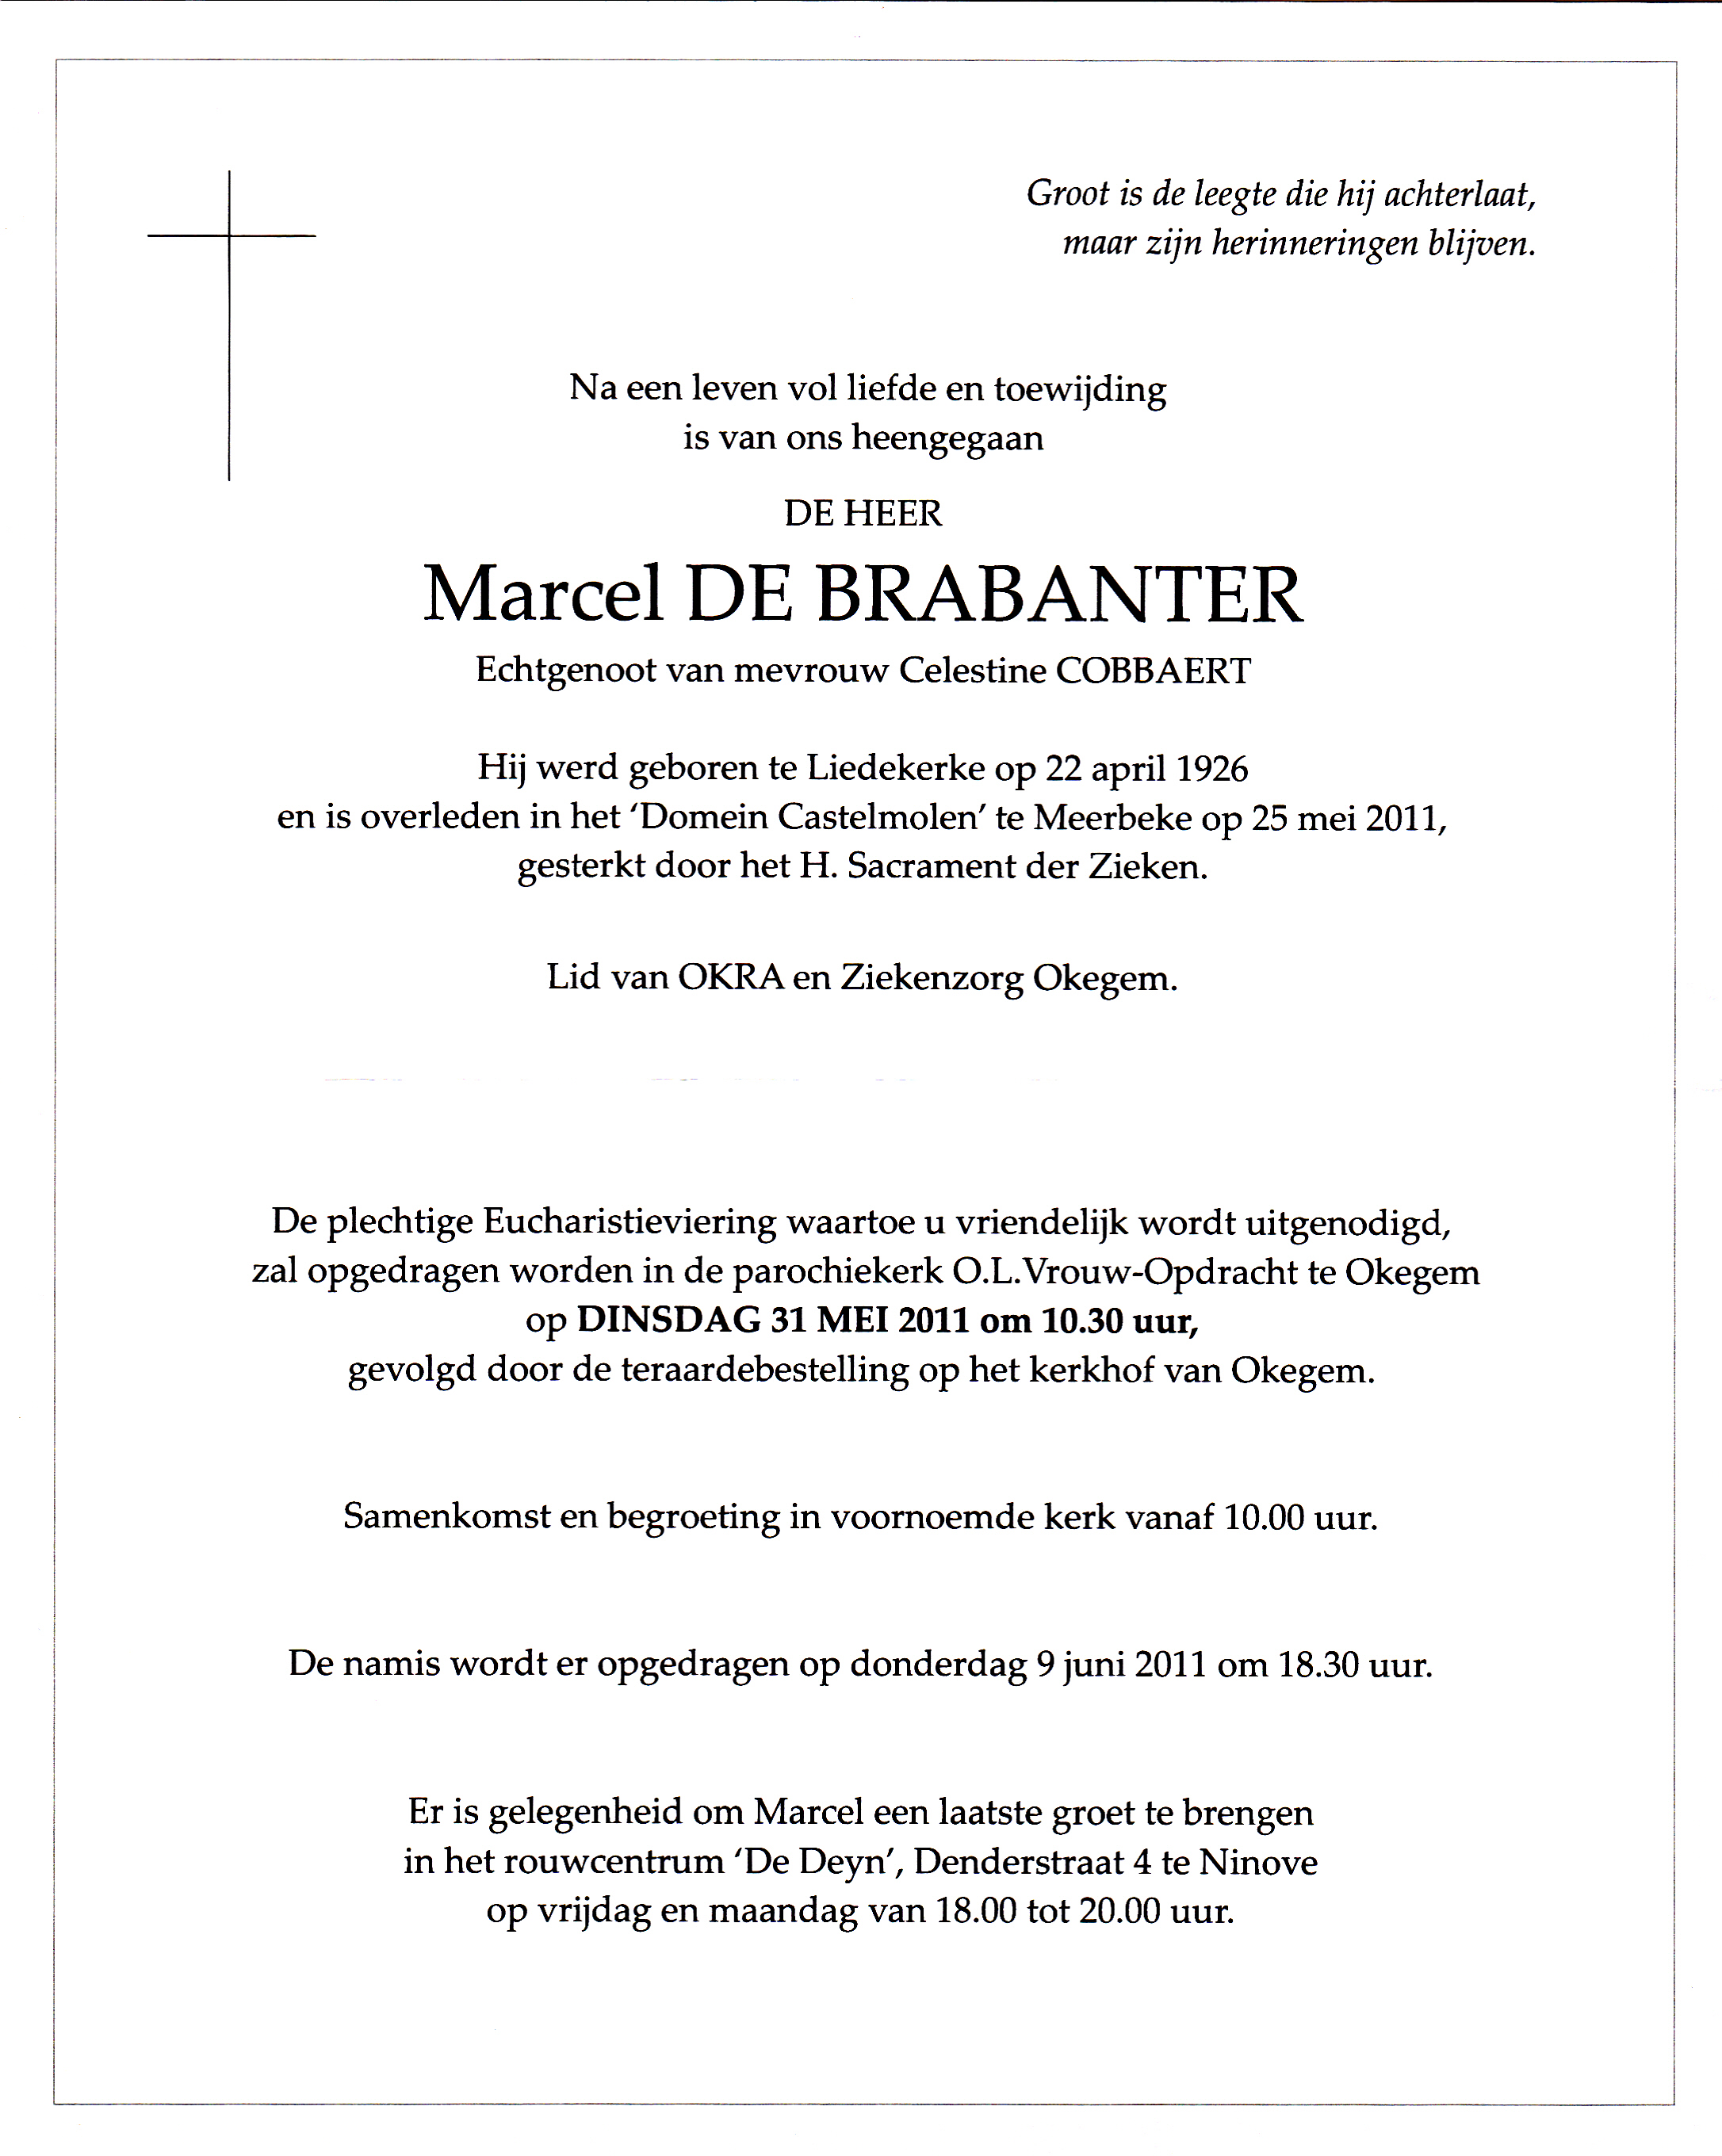 De Brabanter Marcel    